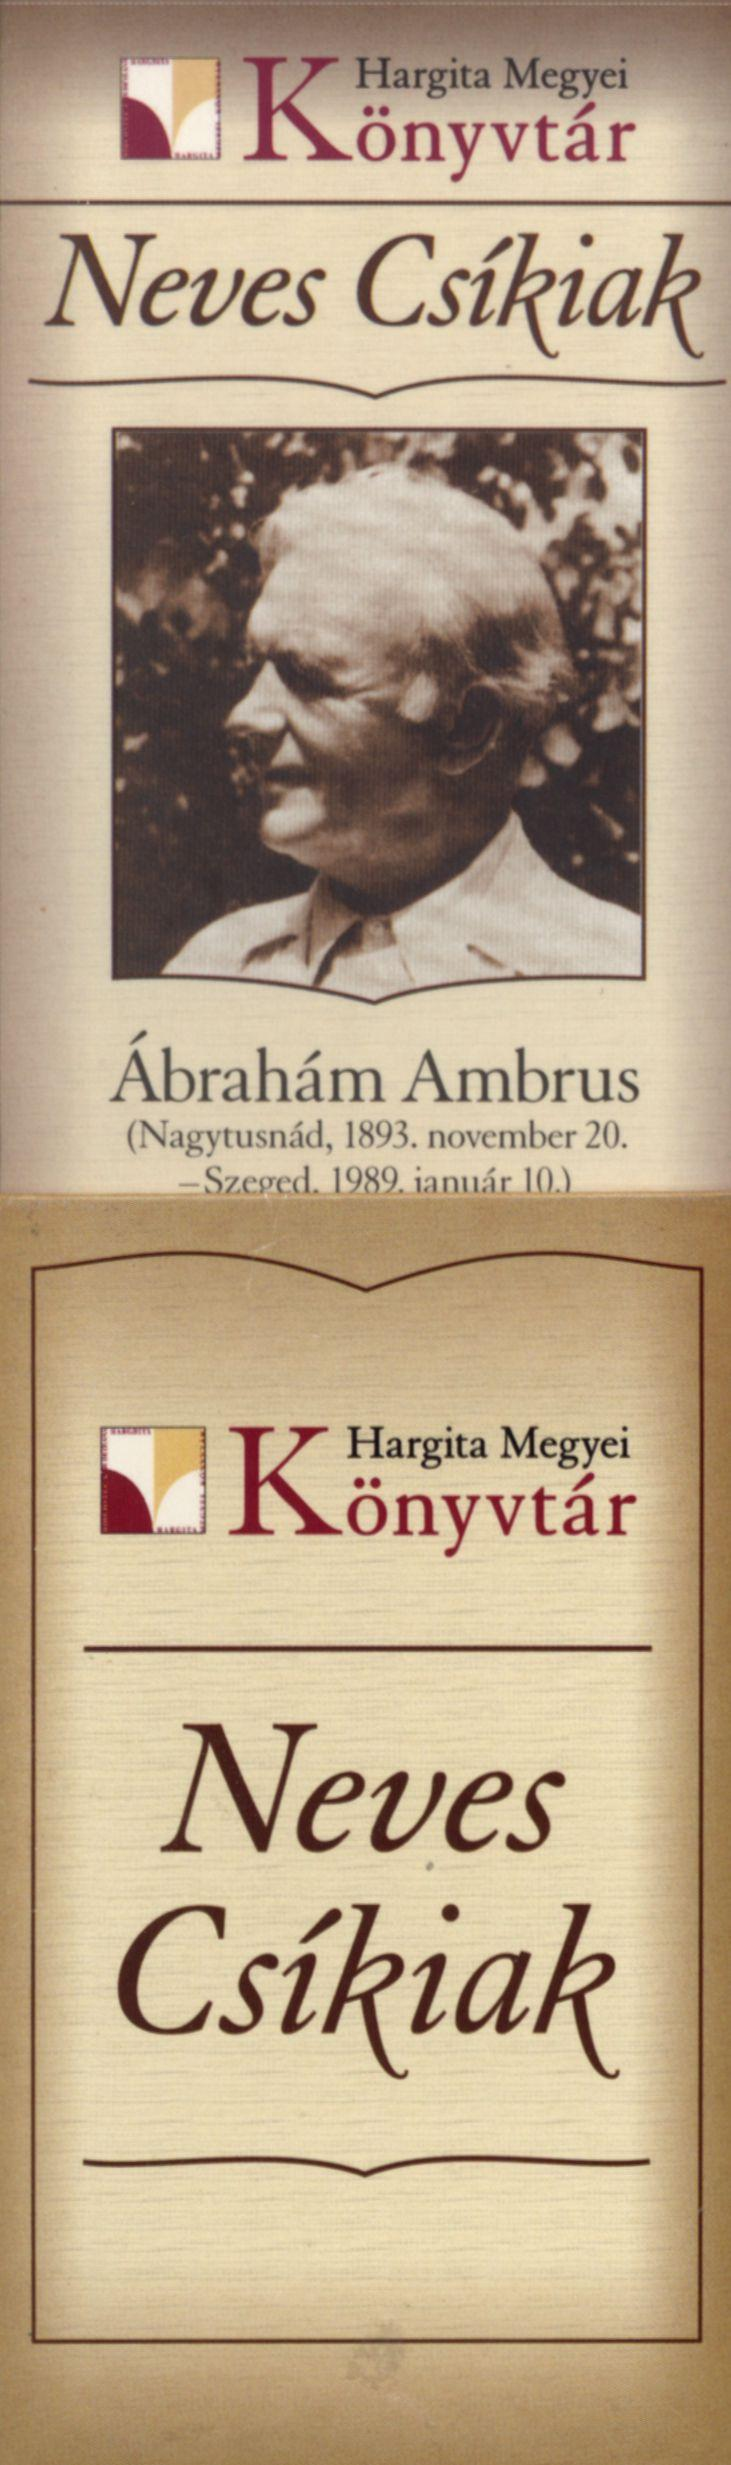 Neves Csikiak Ábrahám Ambrus (Nagytusnád, 1893. november 20.